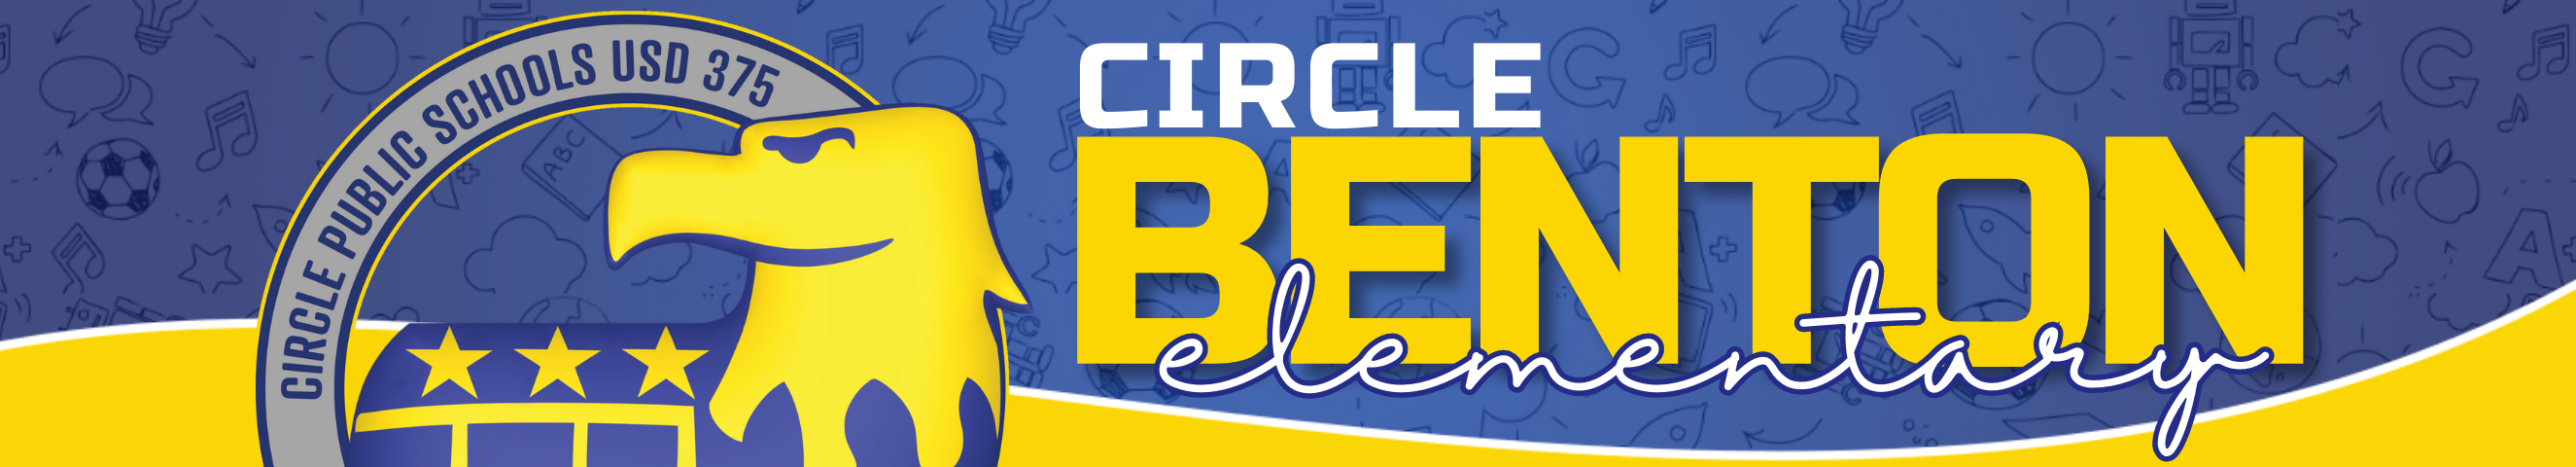 Circle Benton Elementary